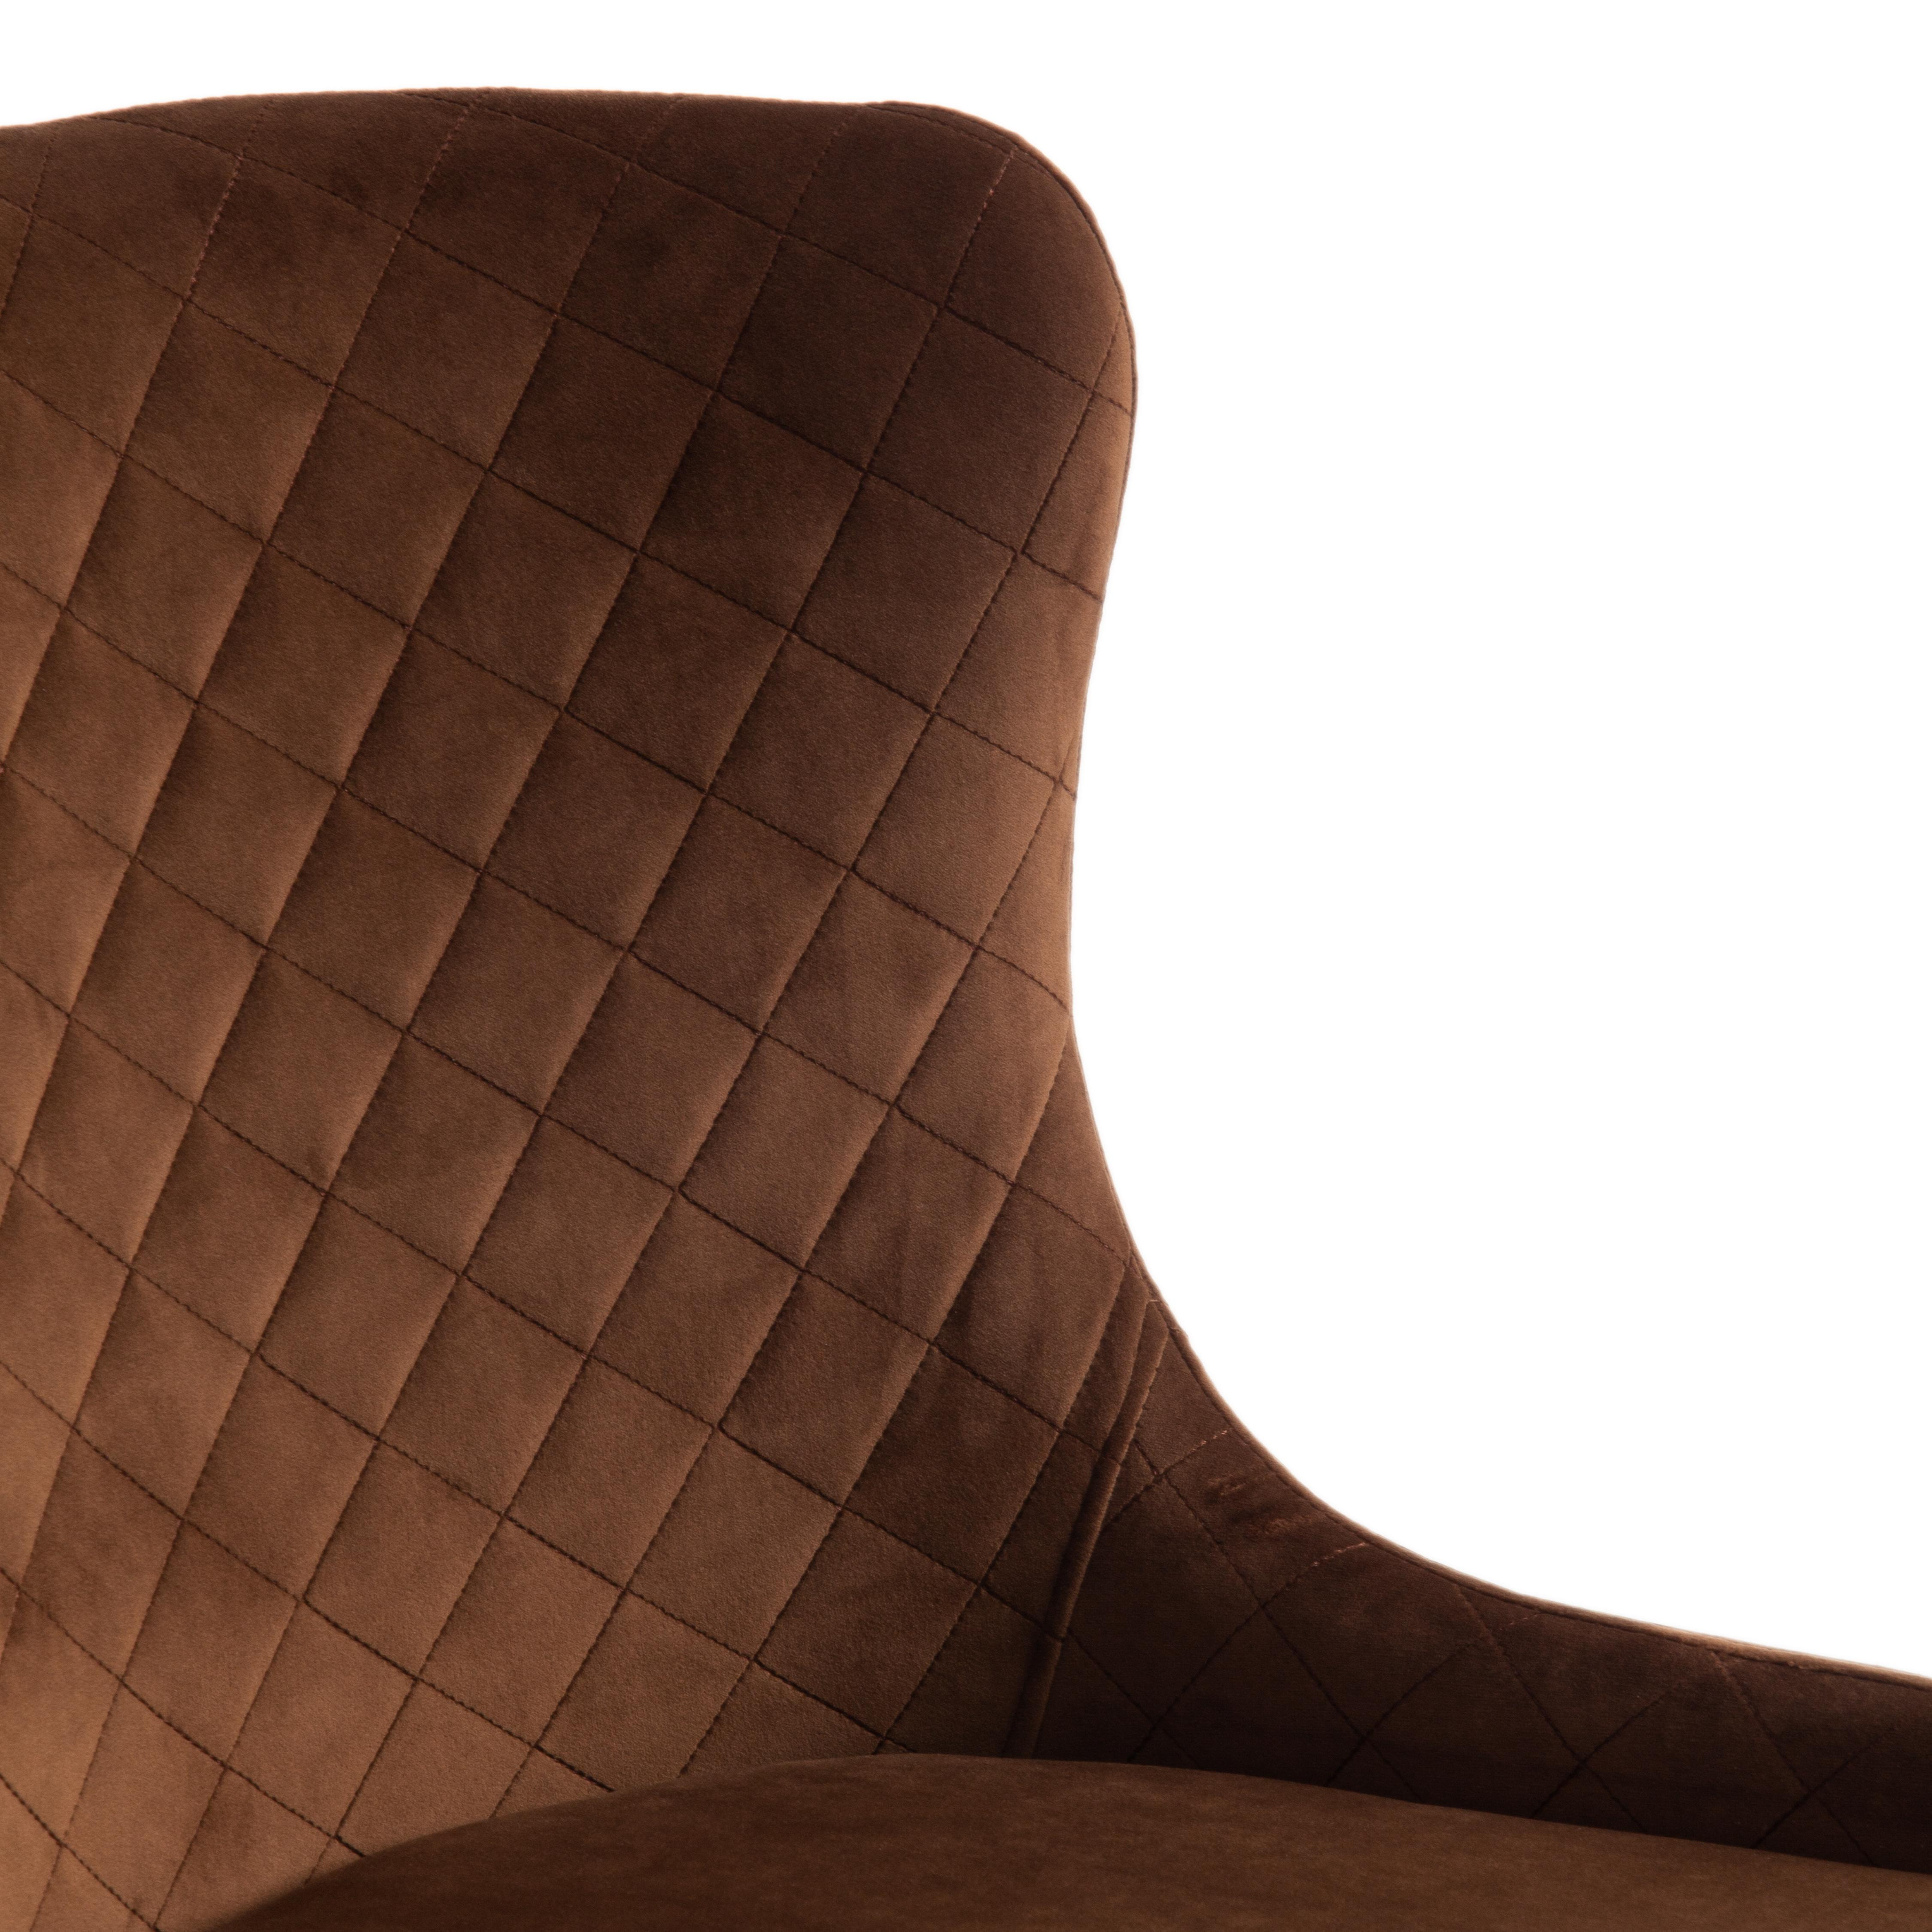 Стул MANTRA (mod. 713) ткань/металл, 49х61х82 см, высота до сидения 49 см, коричневый barkhat 11/черный